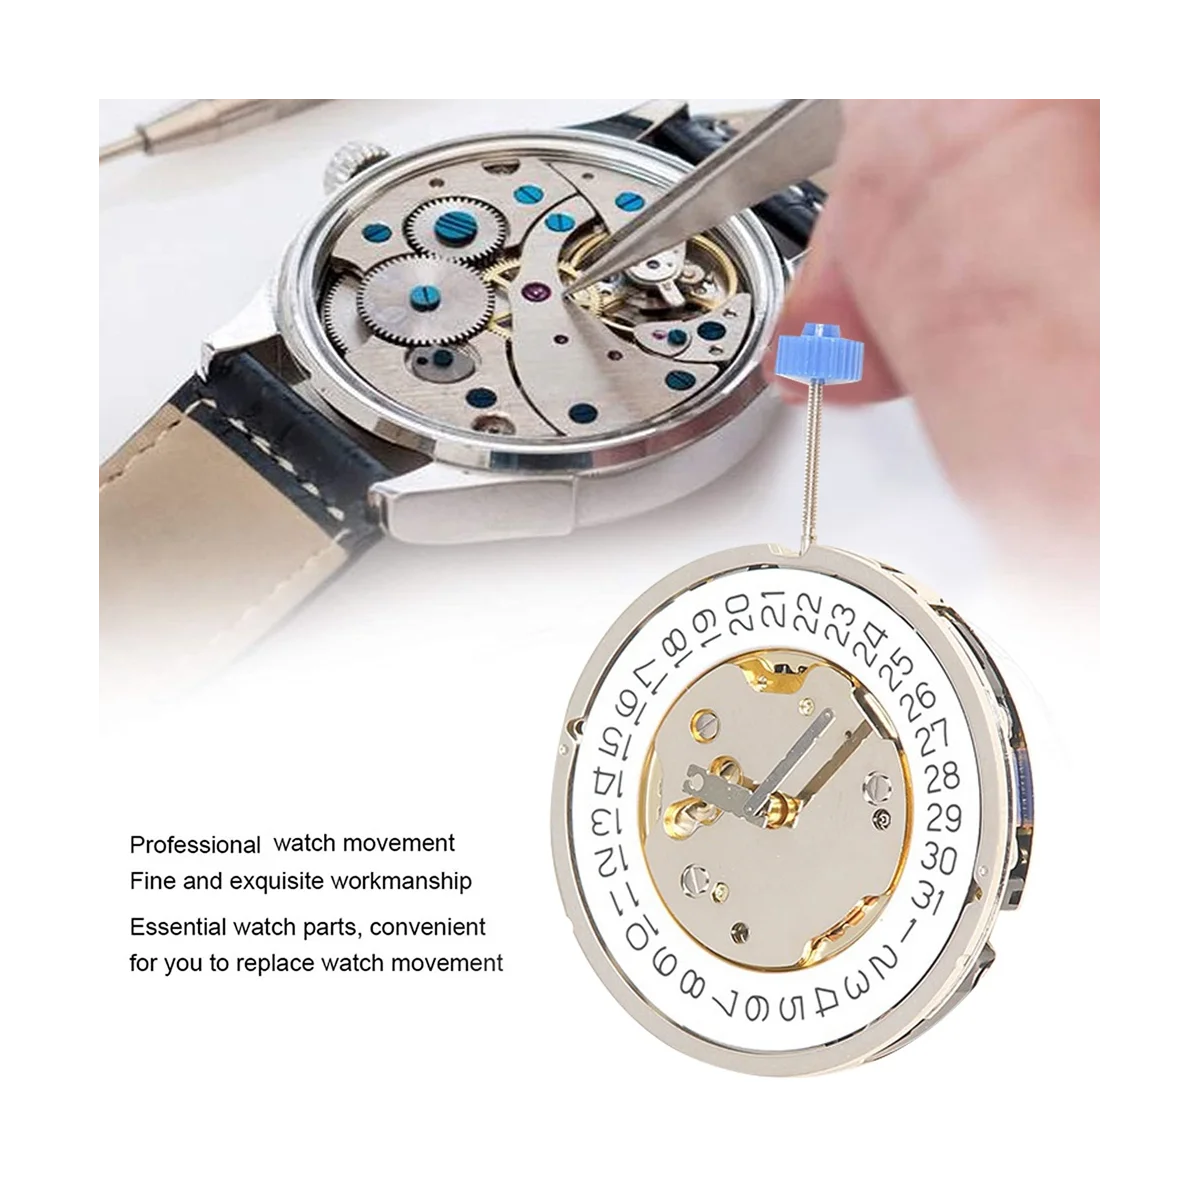 

Часы с механизмом 5040D, аксессуары для часов 5040D, золотистый механизм с календарем, циферблат, высокоточные кварцевые часы с механическим механизмом